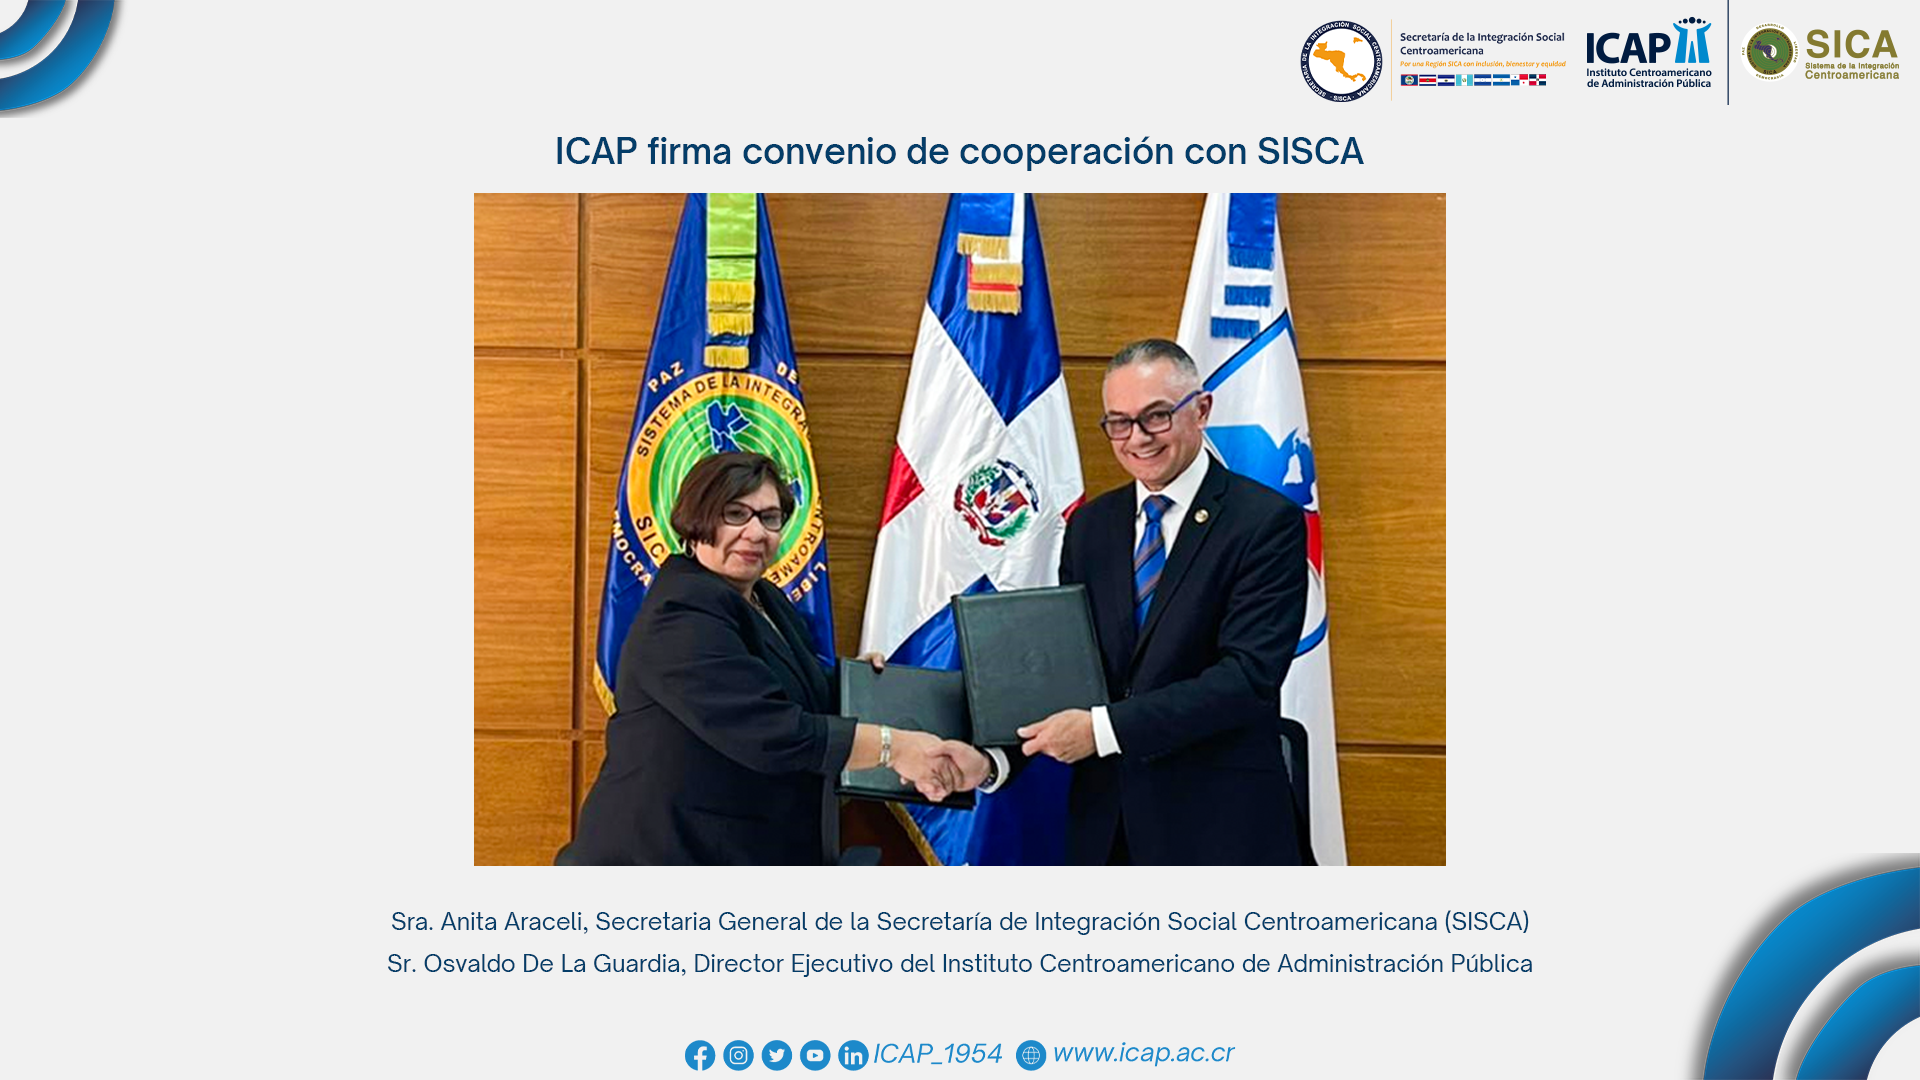 ICAP firma convenio de cooperación con SISCA